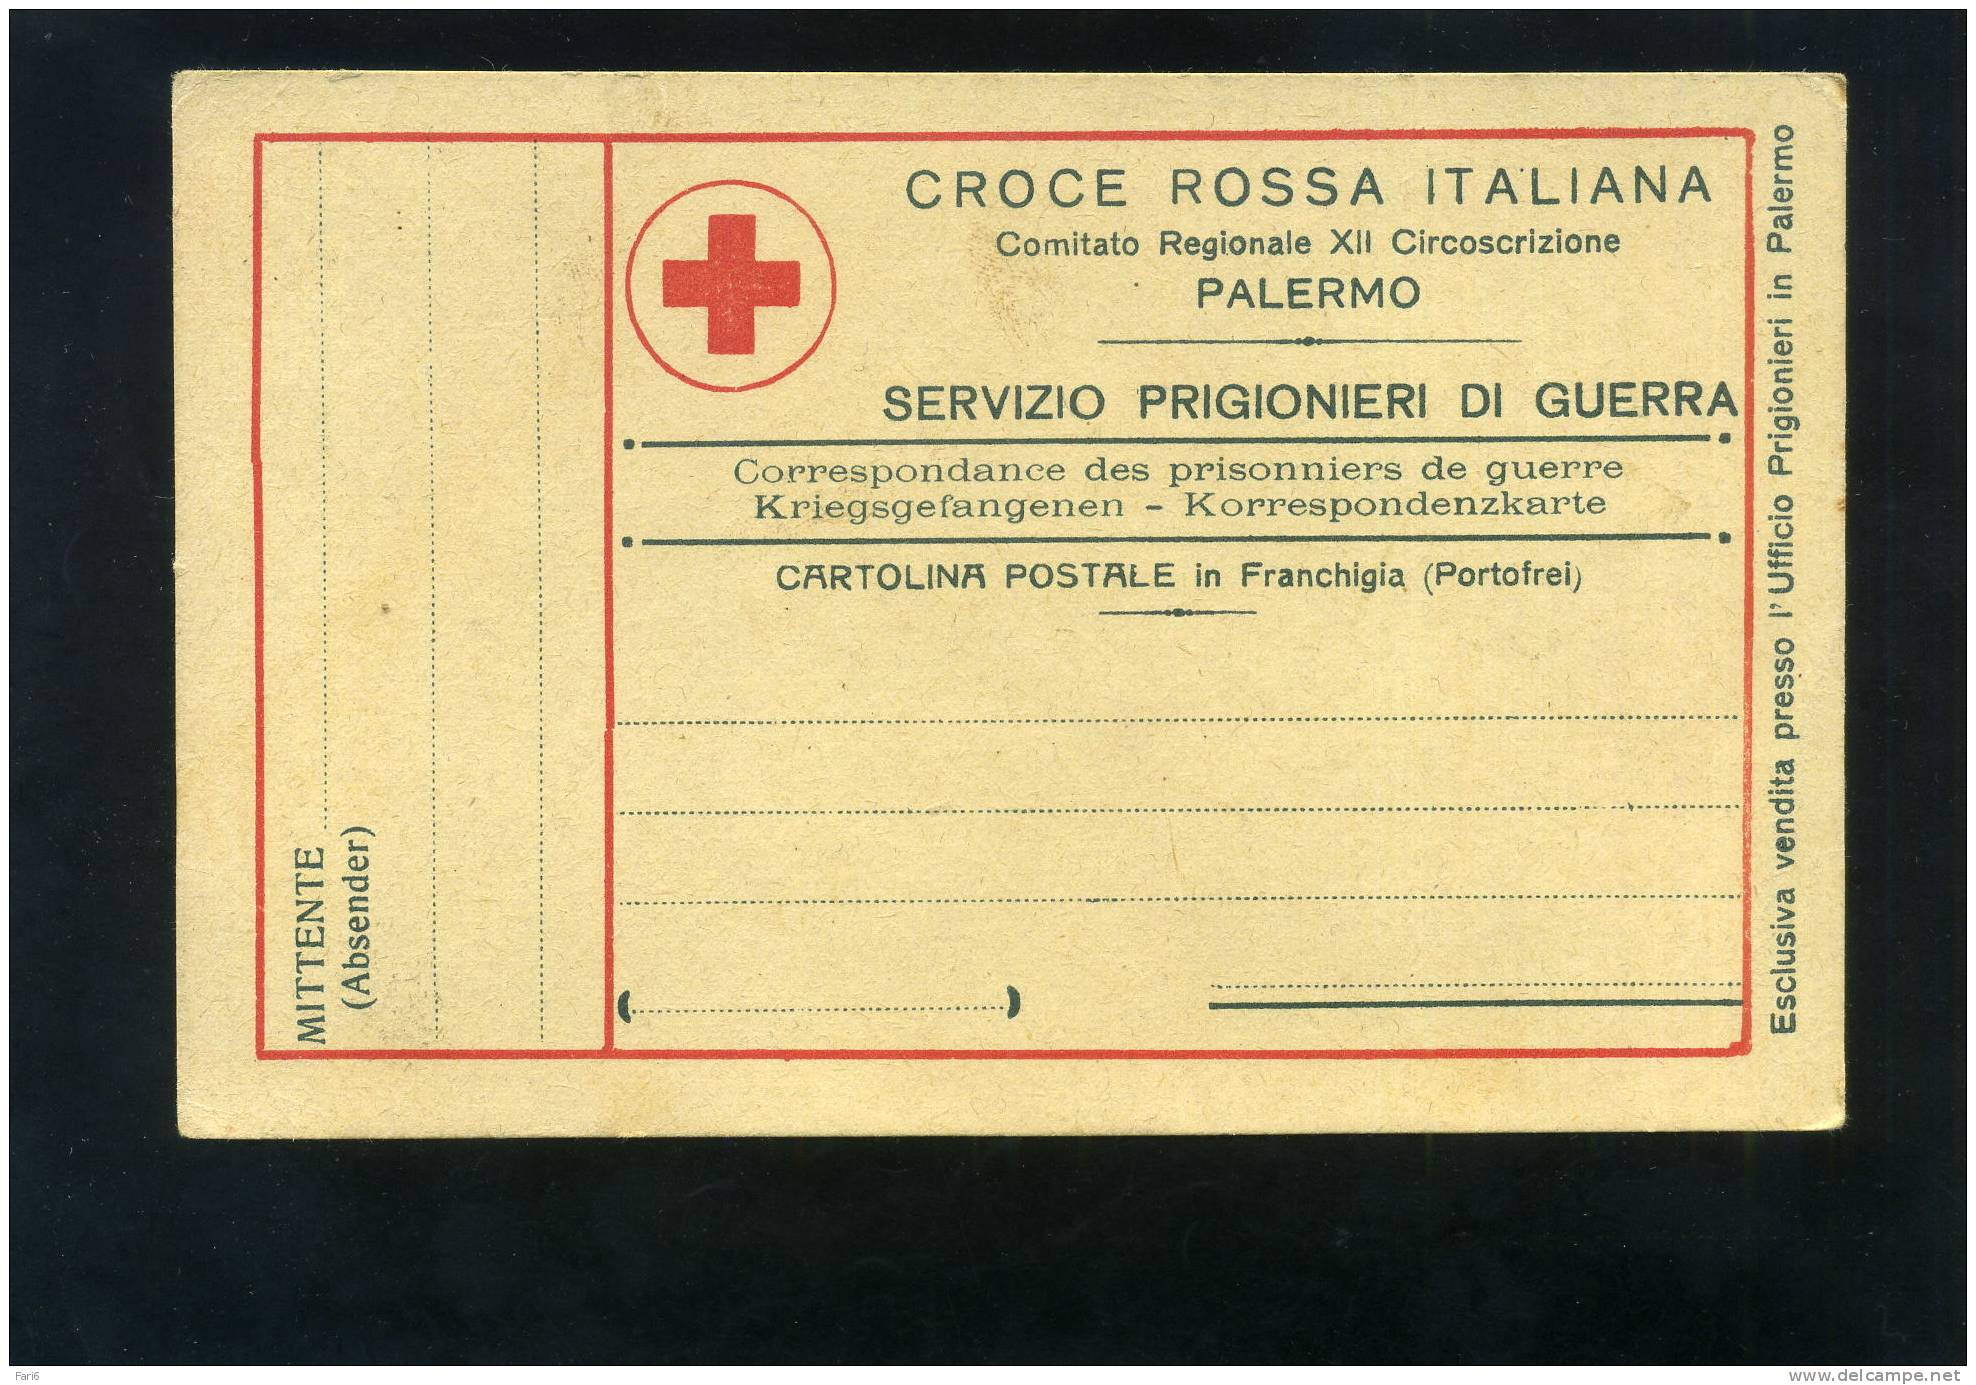 T0102 CARTOLINA FRANCHIGIA CROCE ROSSA PALERMO SERVIZIO PRIGIONIERI DI GUERRA - Red Cross